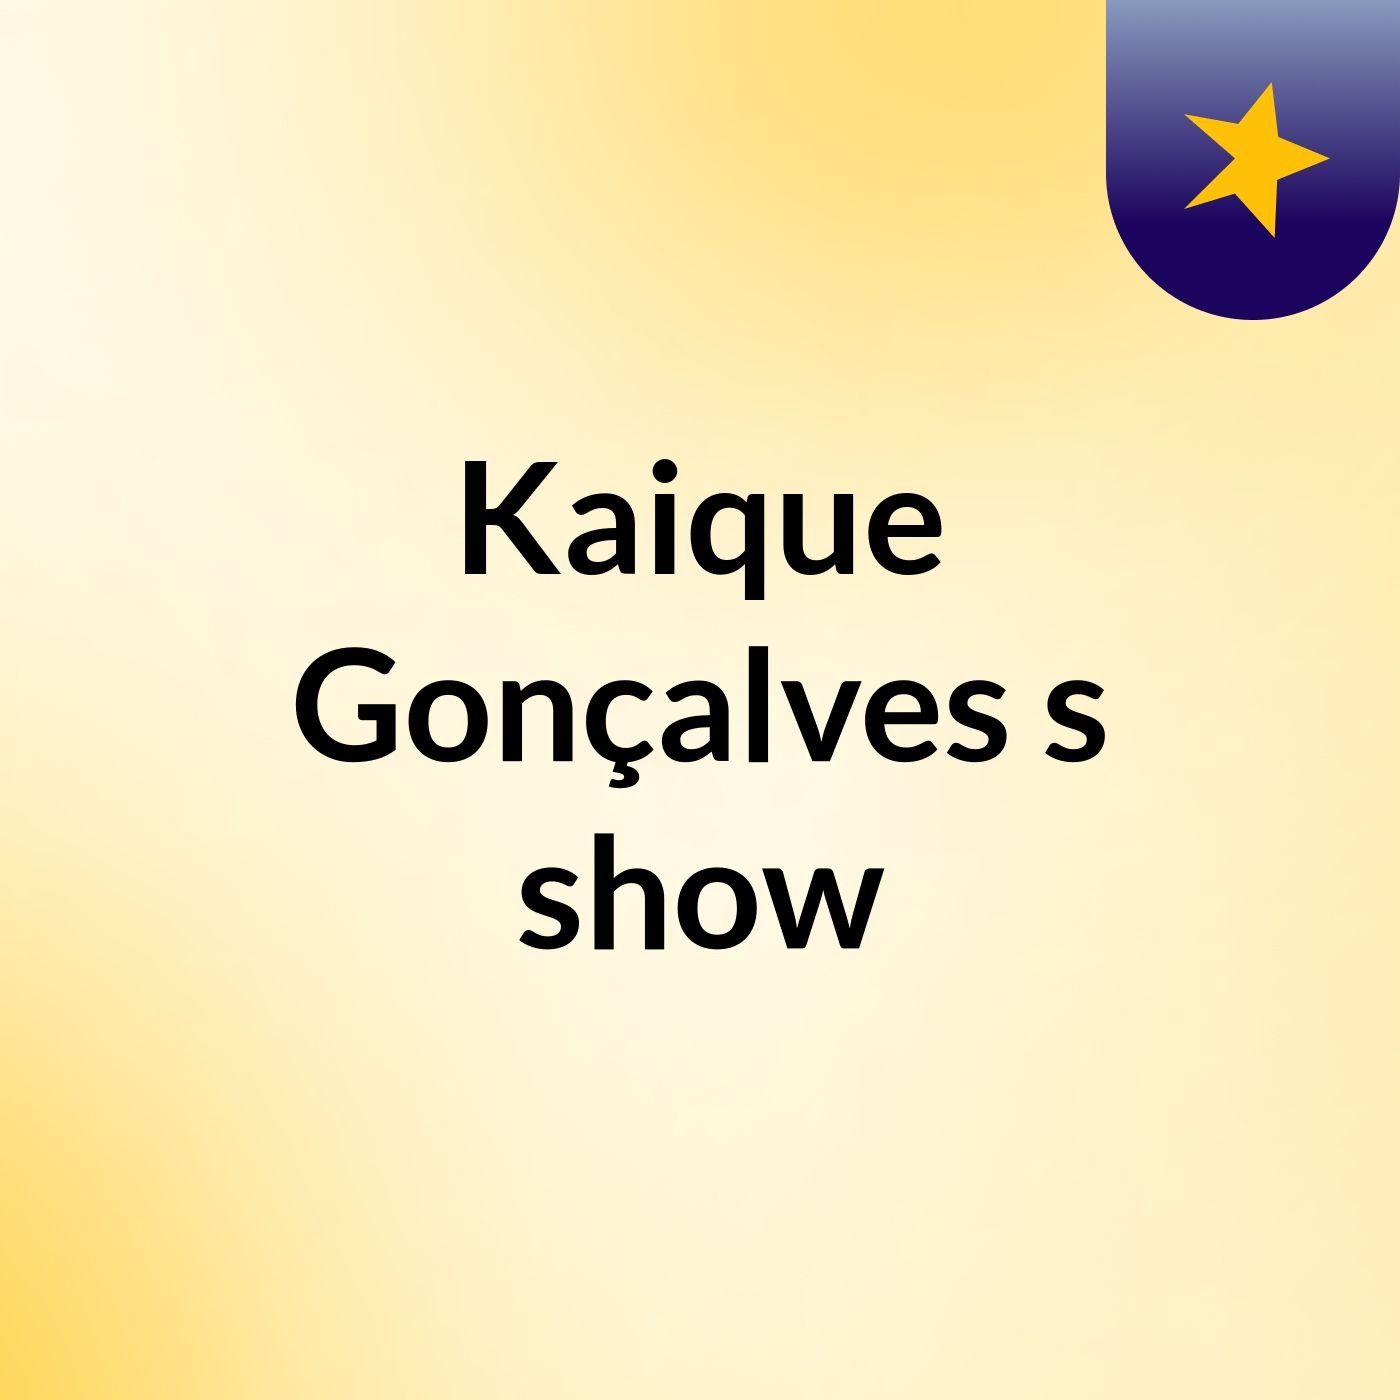 Kaique Gonçalves's show